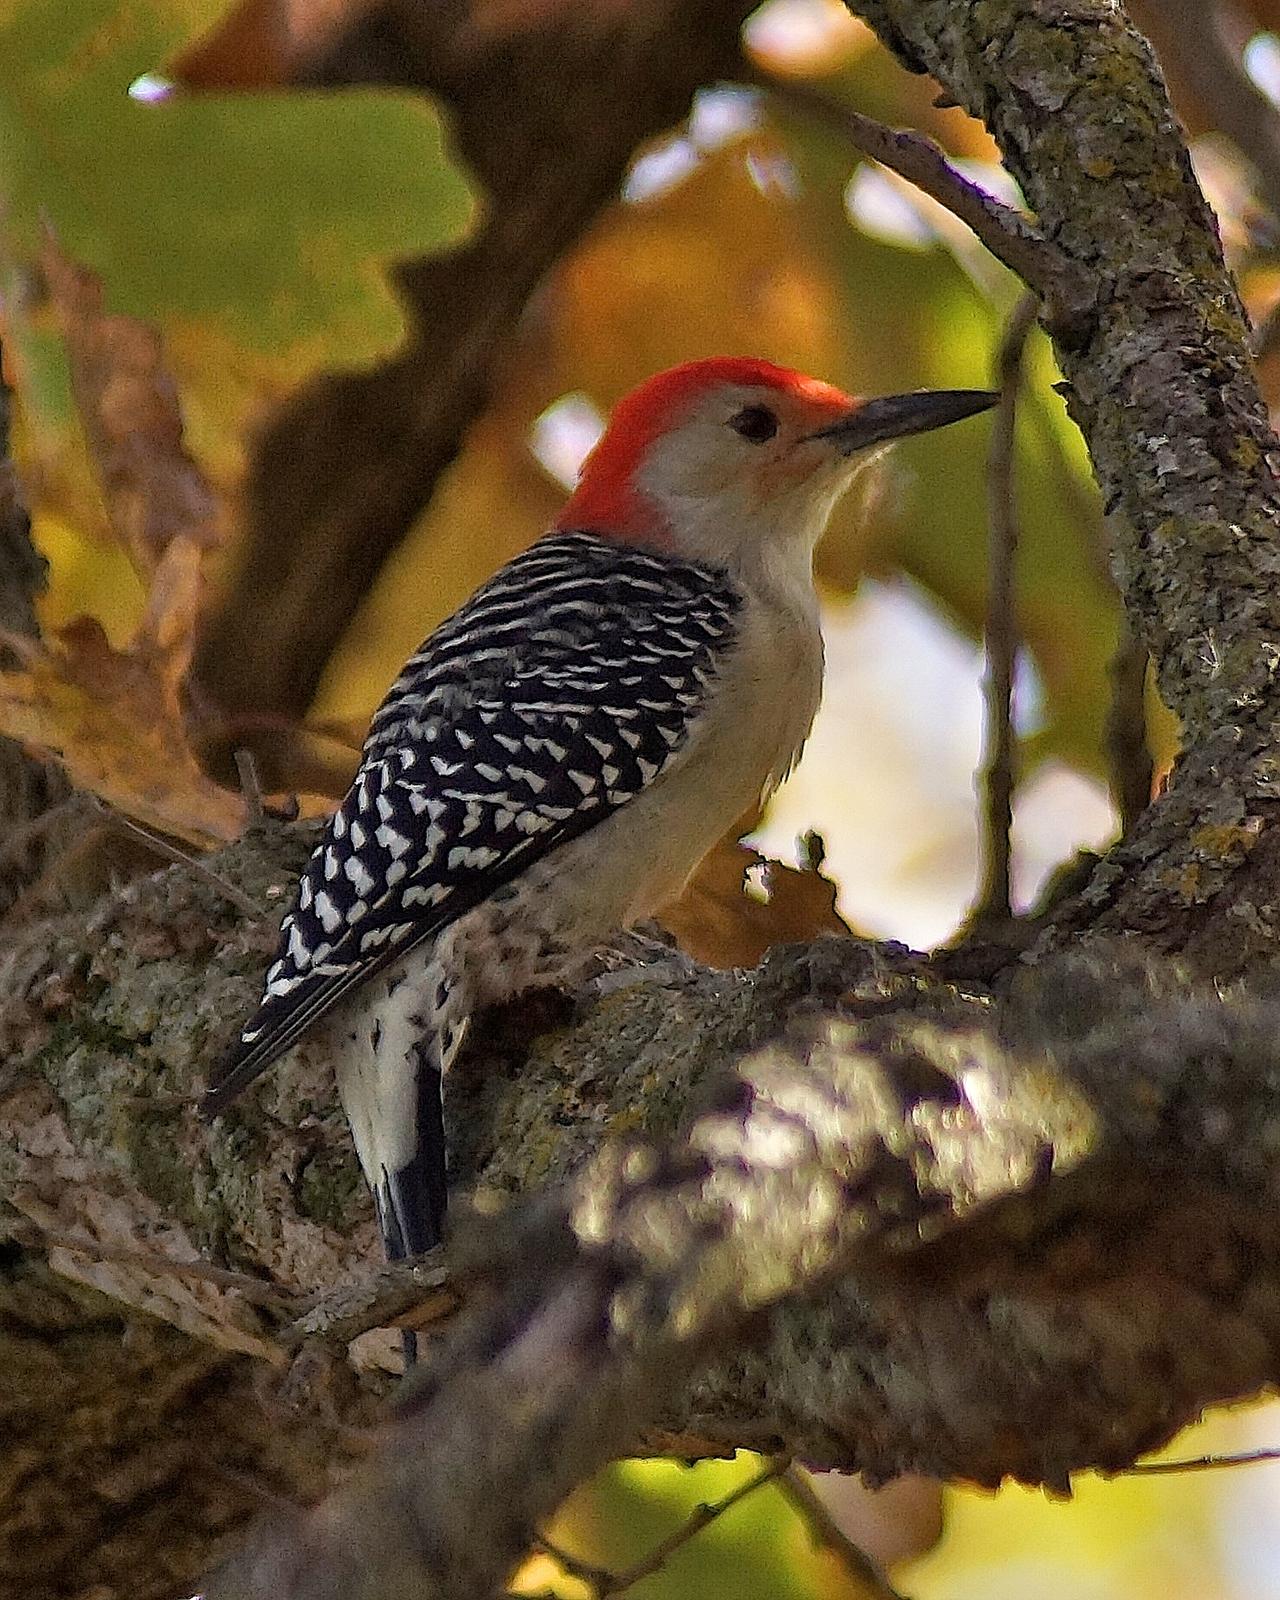 Red-bellied Woodpecker Photo by Gerald Hoekstra